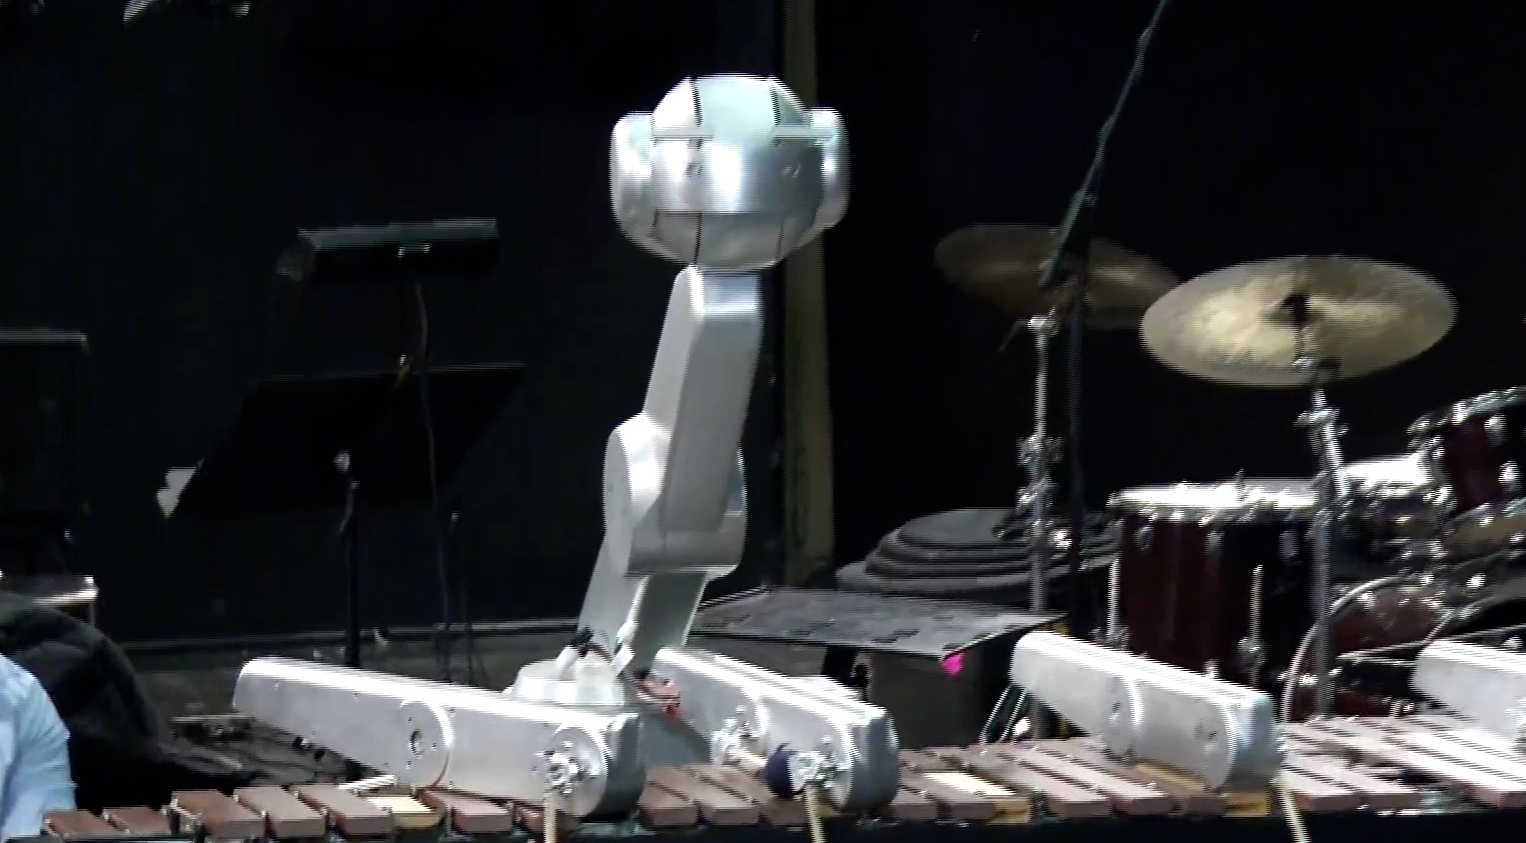 Μέγαρο Μουσικής: Πρεμιέρα για τον “Σιμόν” – το πρώτο ρομπότ μουσικός που αυτοσχεδιάζει σε πραγματικό χρόνο